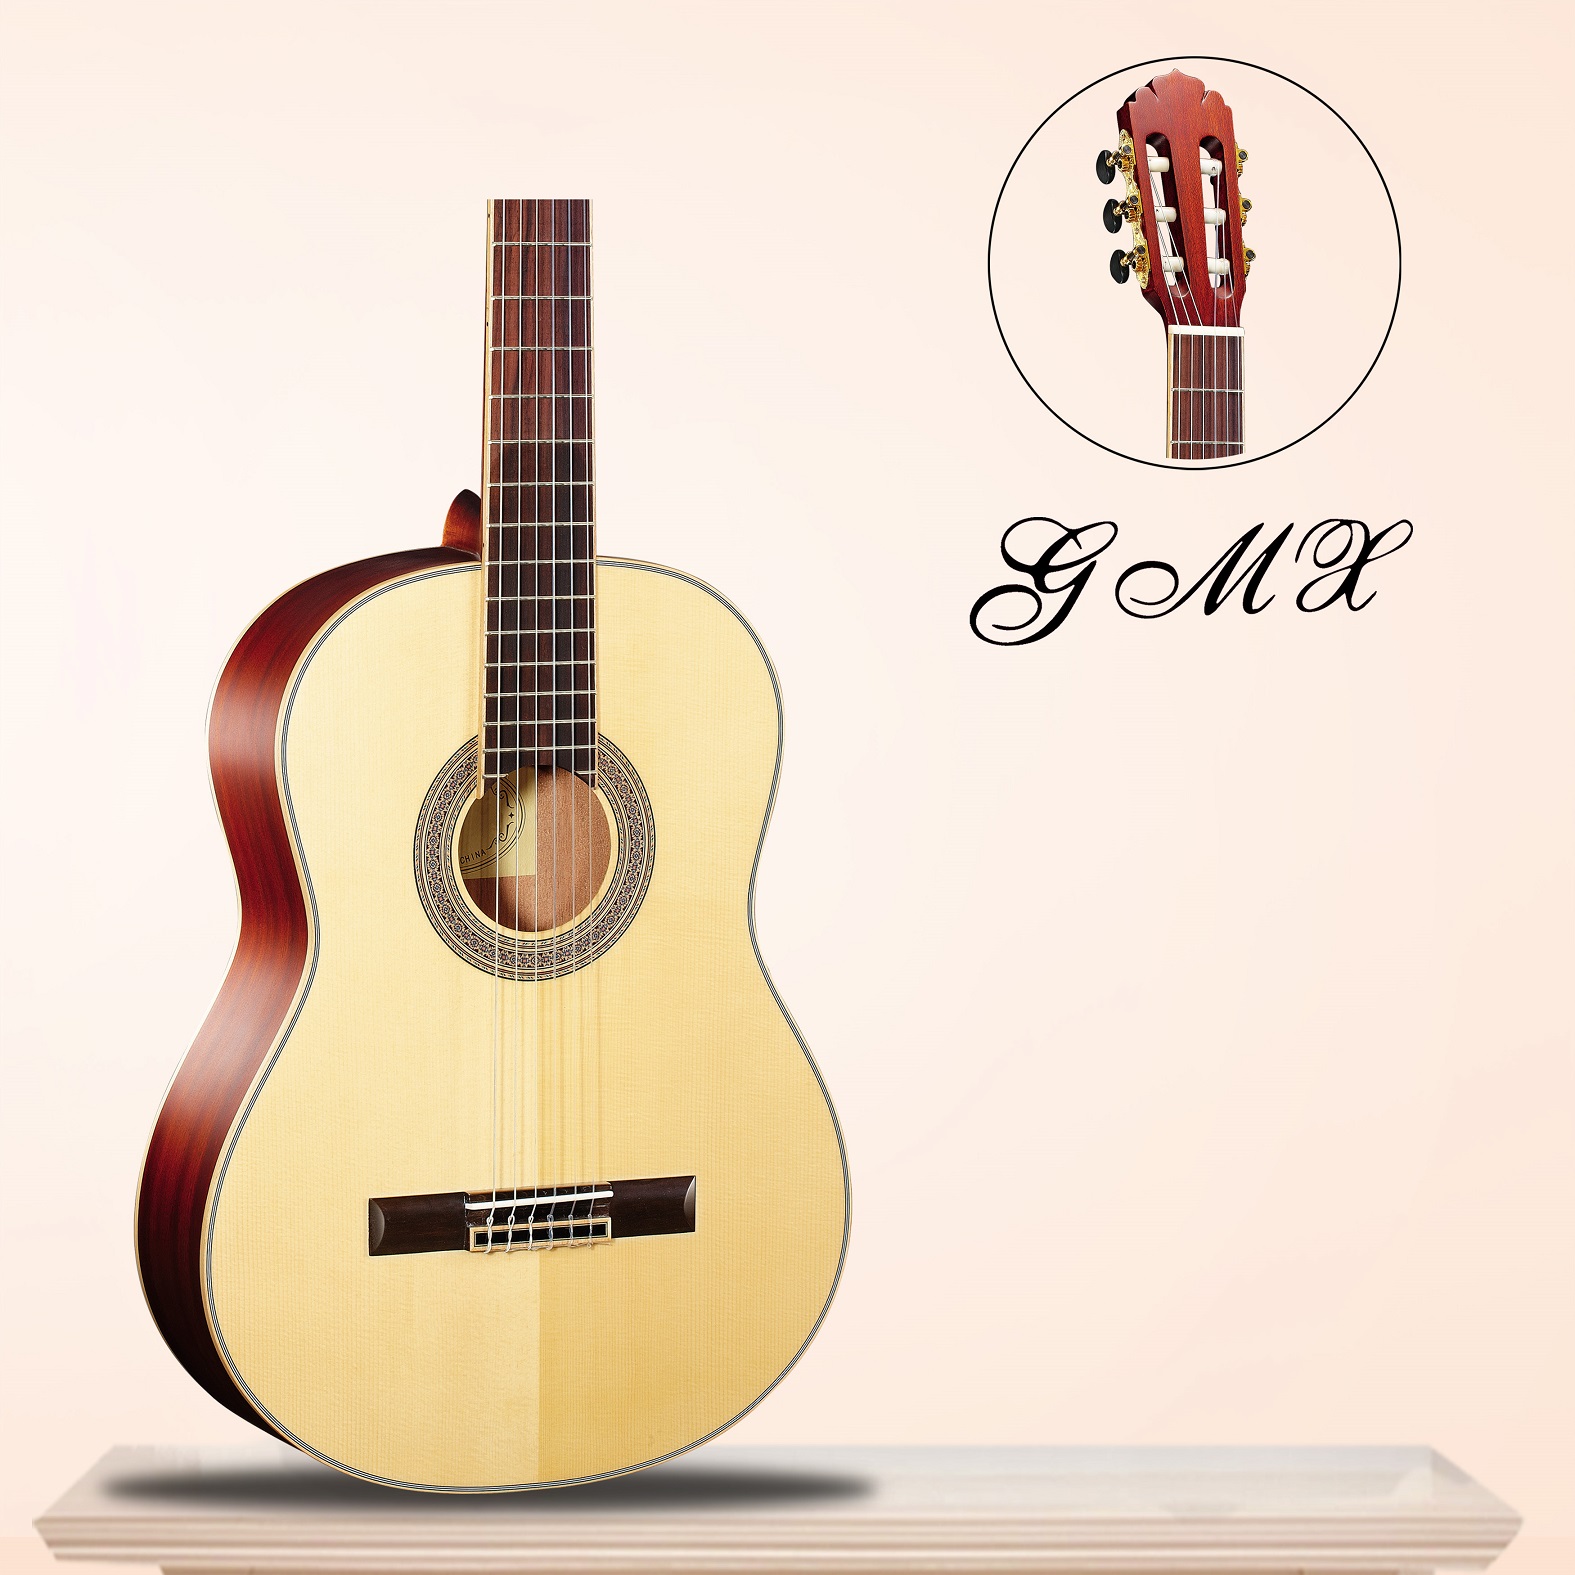 Hoge kwaliteit klassieke gitaar uit China GMX13738